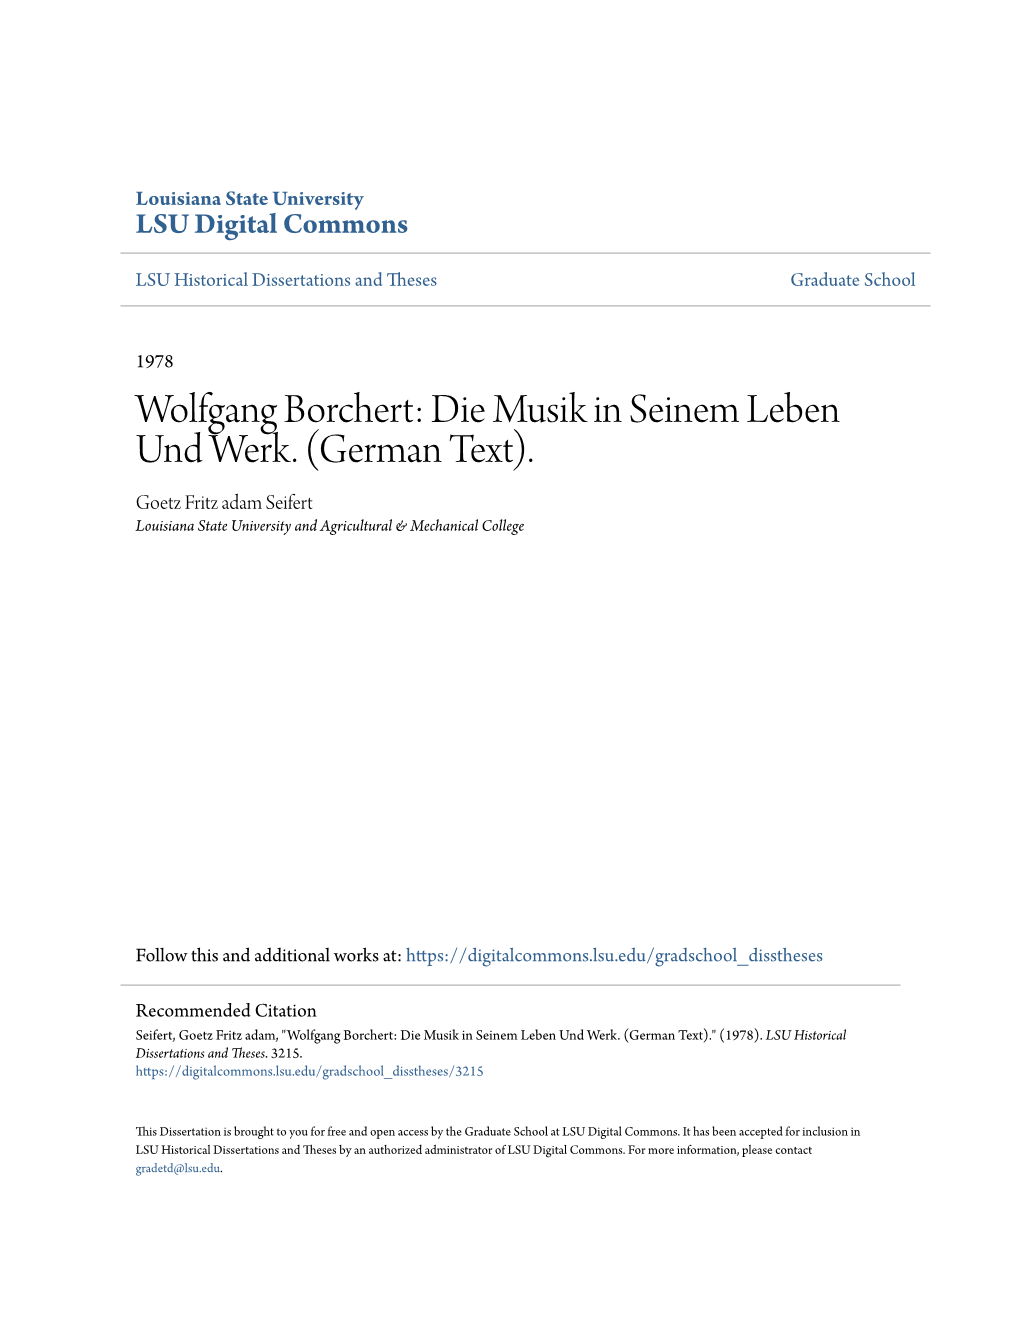 Wolfgang Borchert: Die Musik in Seinem Leben Und Werk. (German Text)